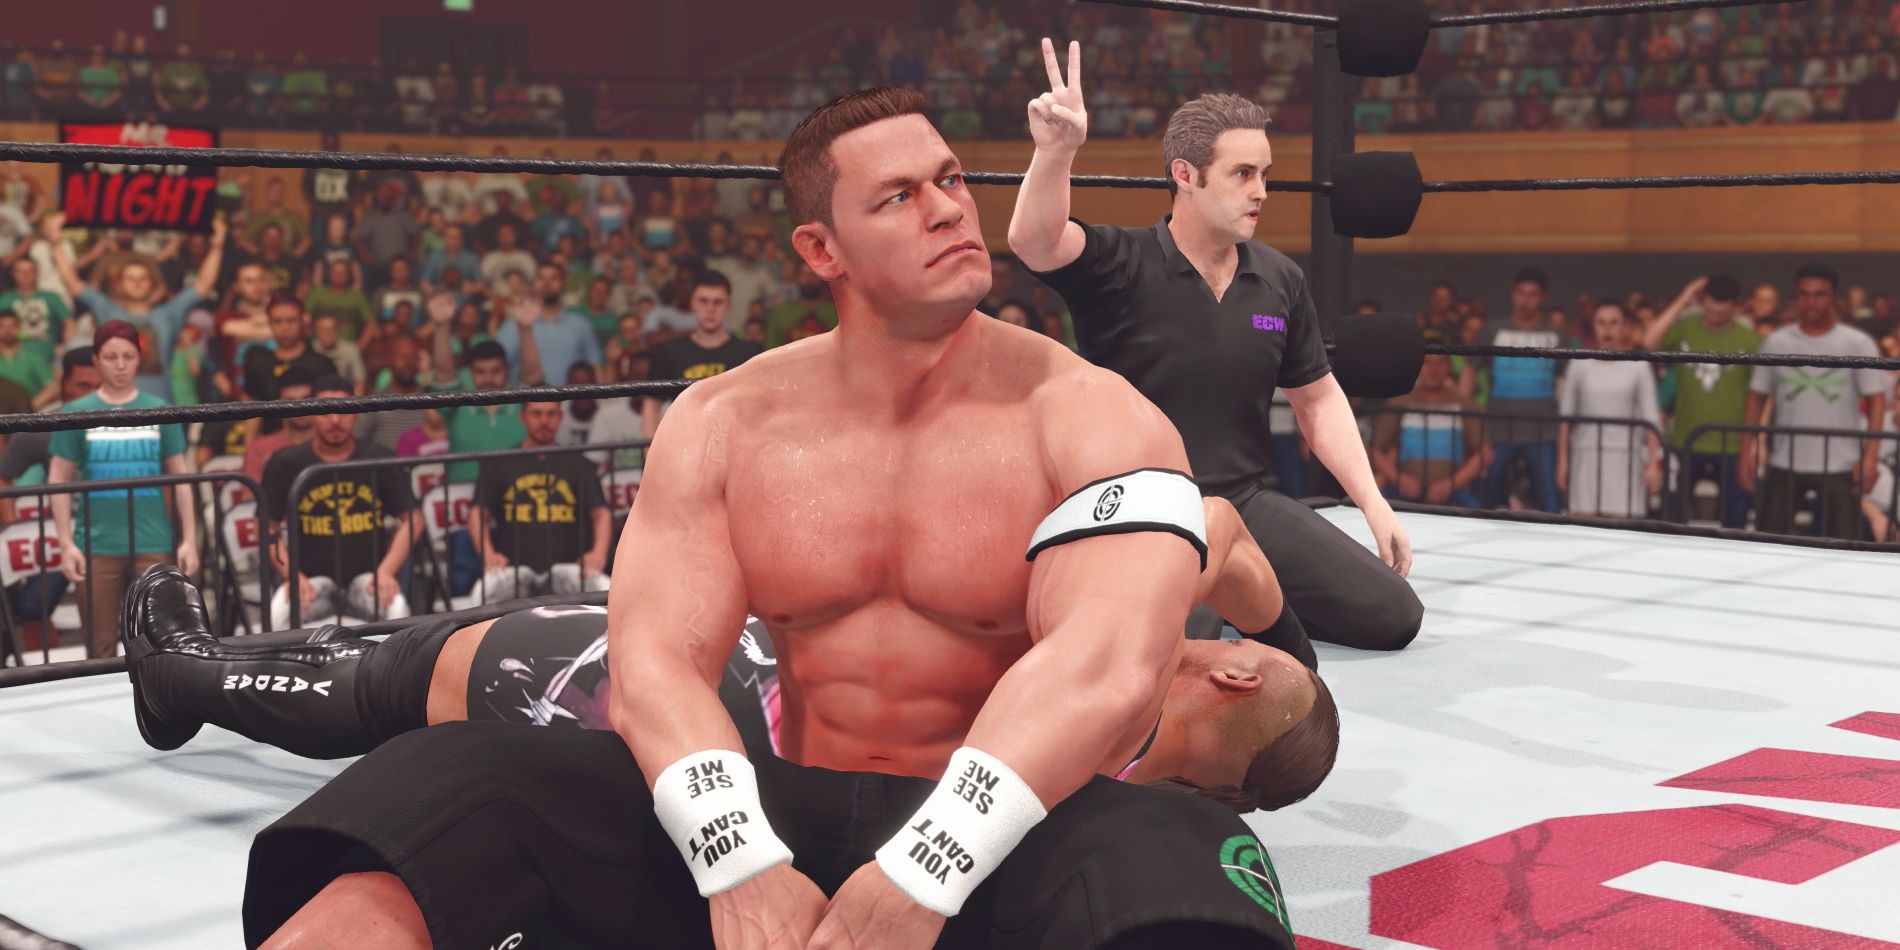 Le lutteur John Cena semble déçu alors qu'il est sur le ring avec RVD après que son adversaire ait échappé à une quille au compte de deux.  L'arbitre est vu tenant deux doigts en arrière-plan.